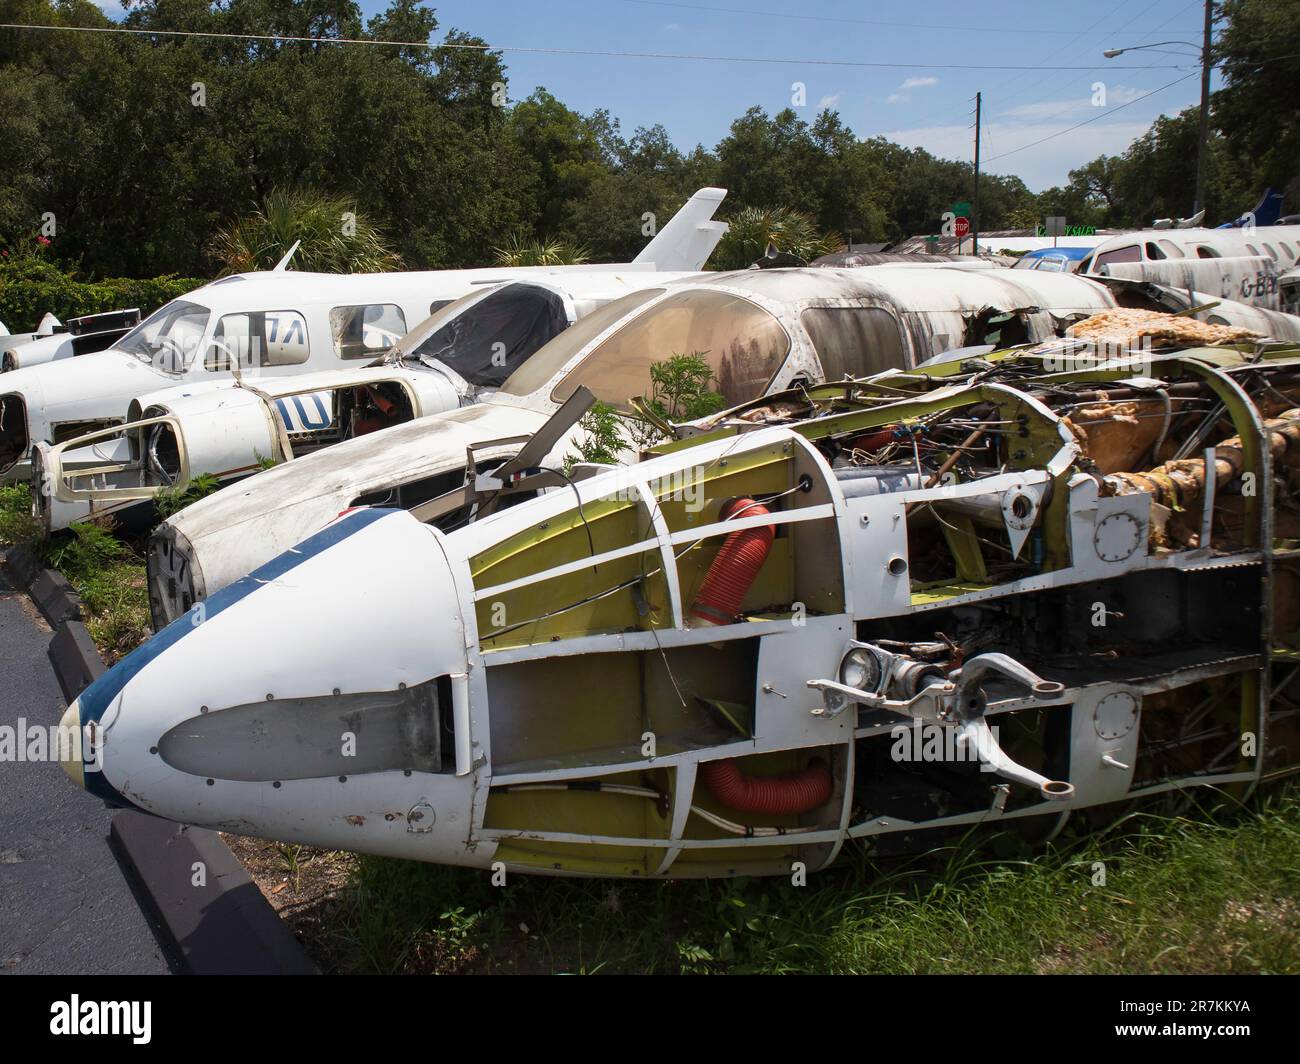 Airplane boneyard / scrapyard / junkyard with planes disassembled. Stock Photo